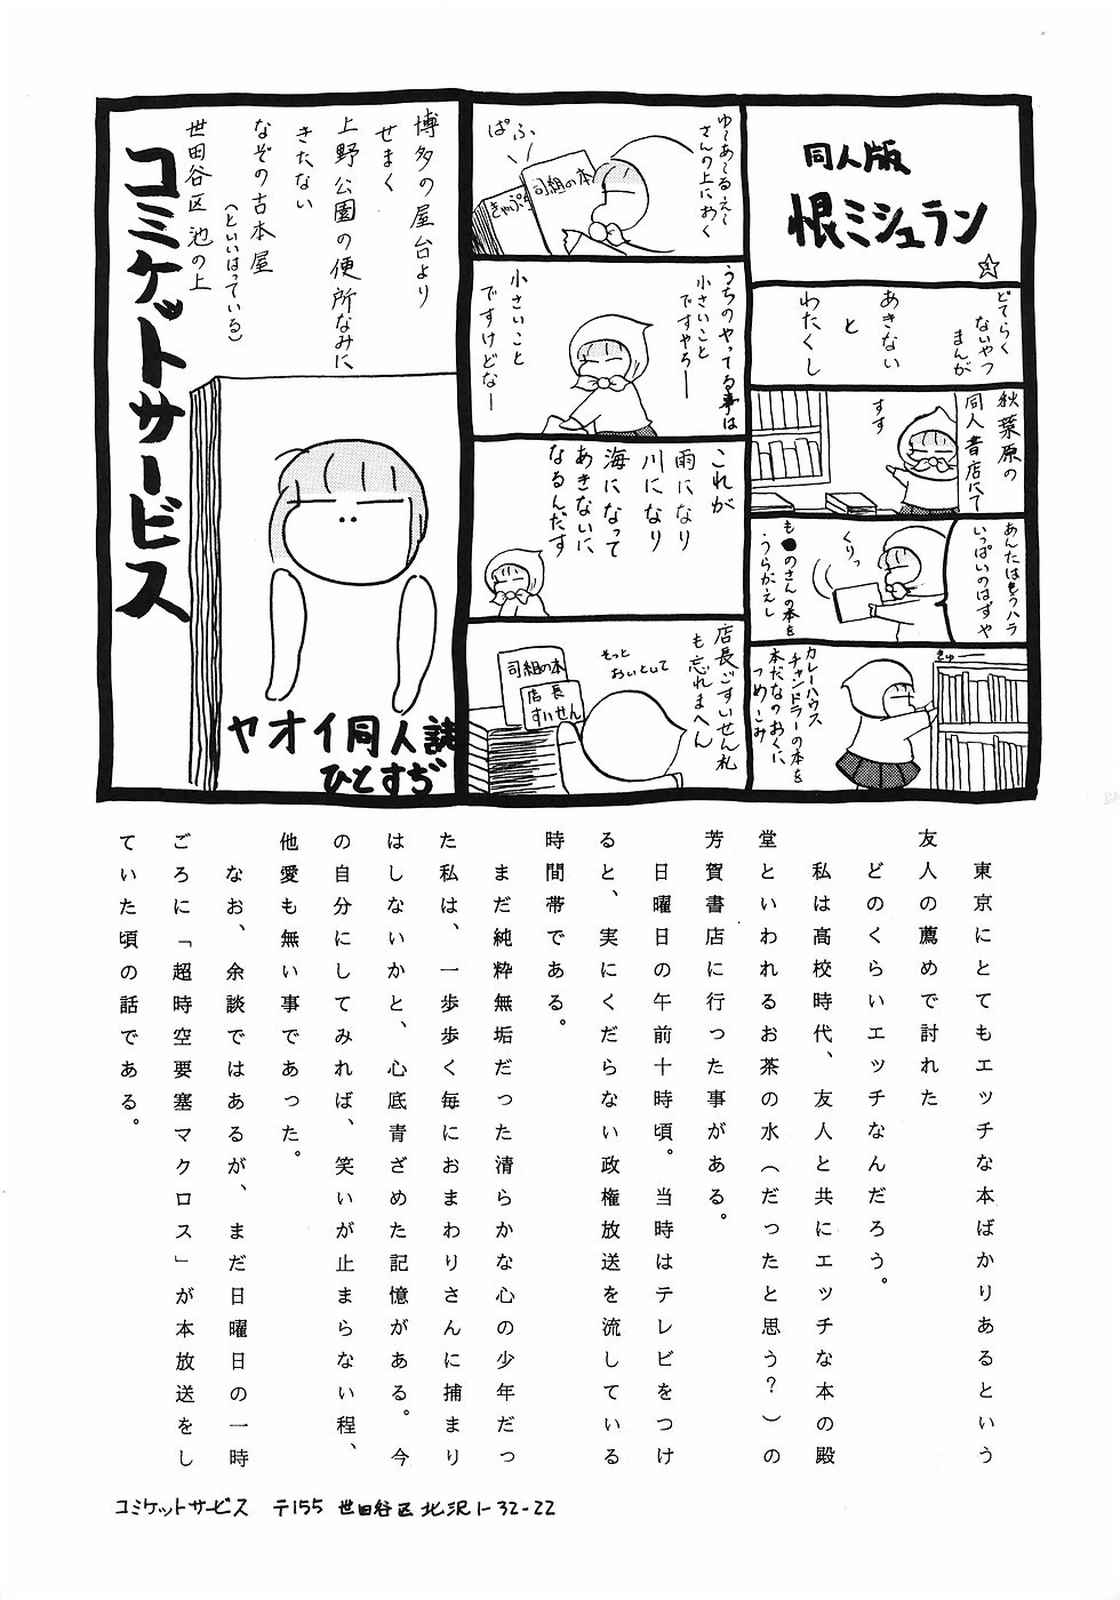 [美色アカデミィー＆関東司組 (Various)] Bi-shoku Academy Vol.1 (Various) page 36 full